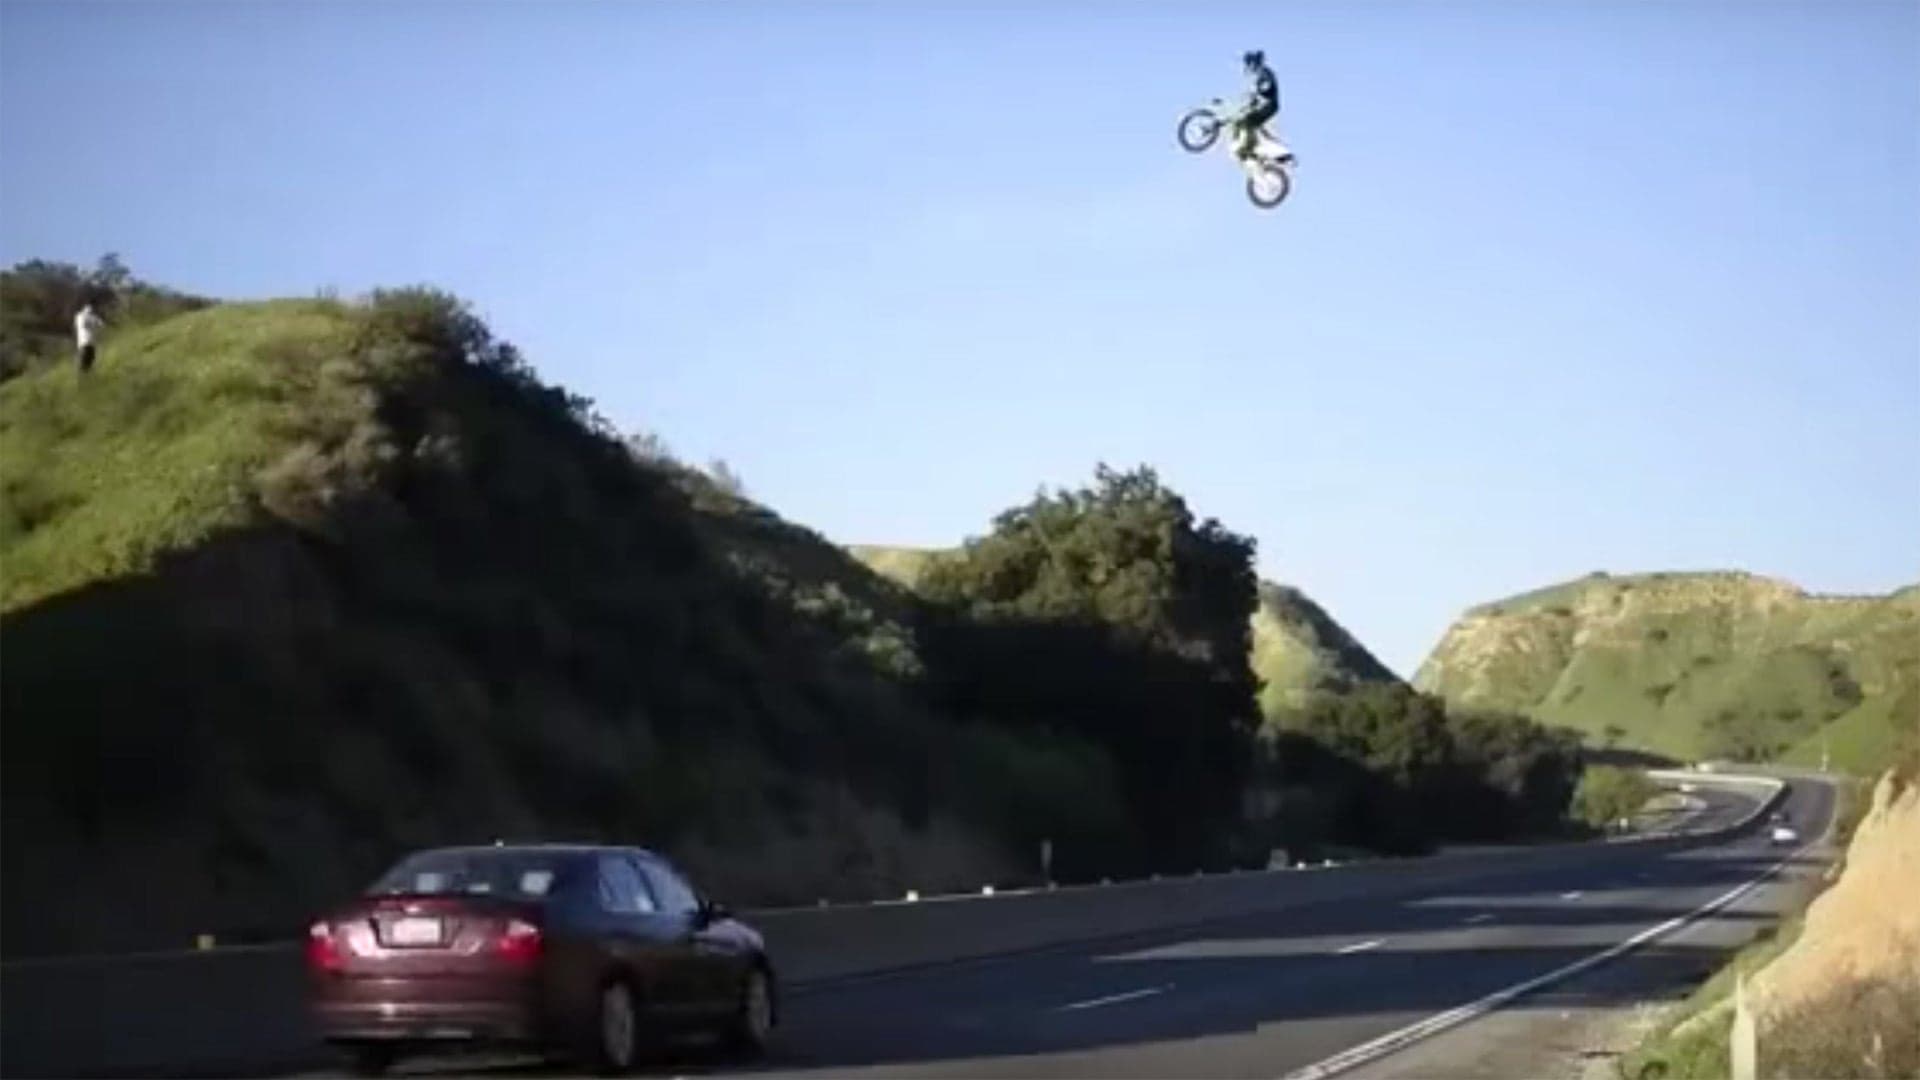 California Dirt Bike Rider Jumps the 60 Freeway in Dangerous Stunt